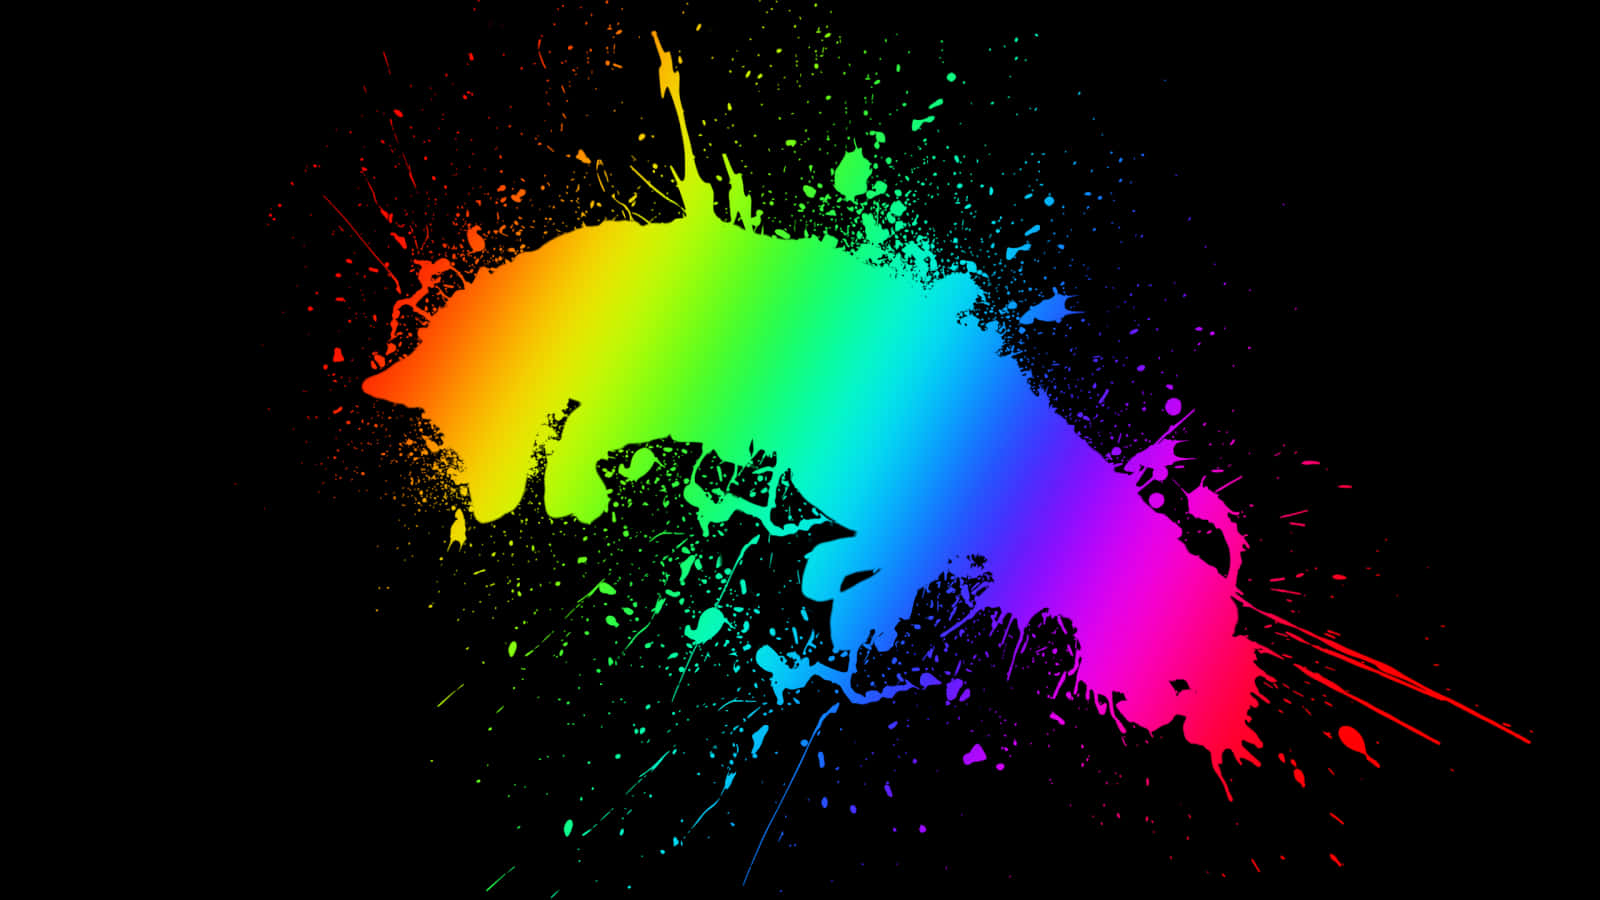 Vibrant Explosion of Colors - Tricolor Paint Splash Art Wallpaper